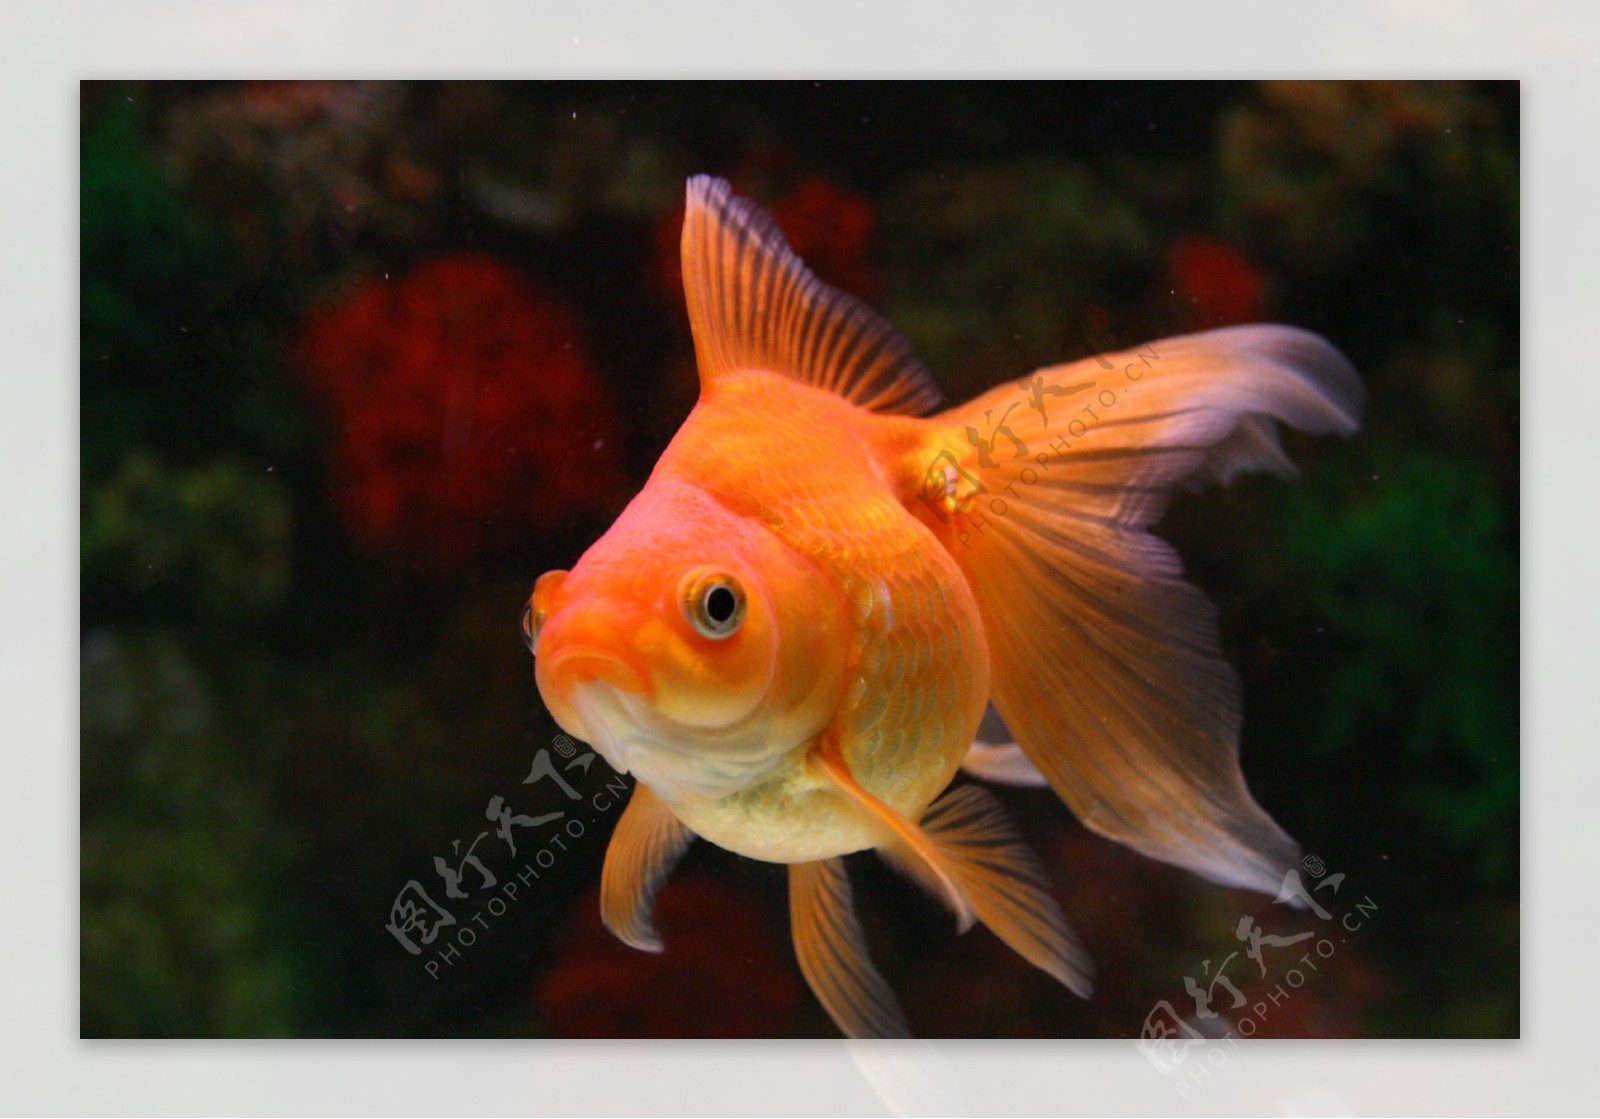 红金鱼欣赏鱼图片高清原图下载,红金鱼欣赏鱼图片,高清图片 - 壁纸更好